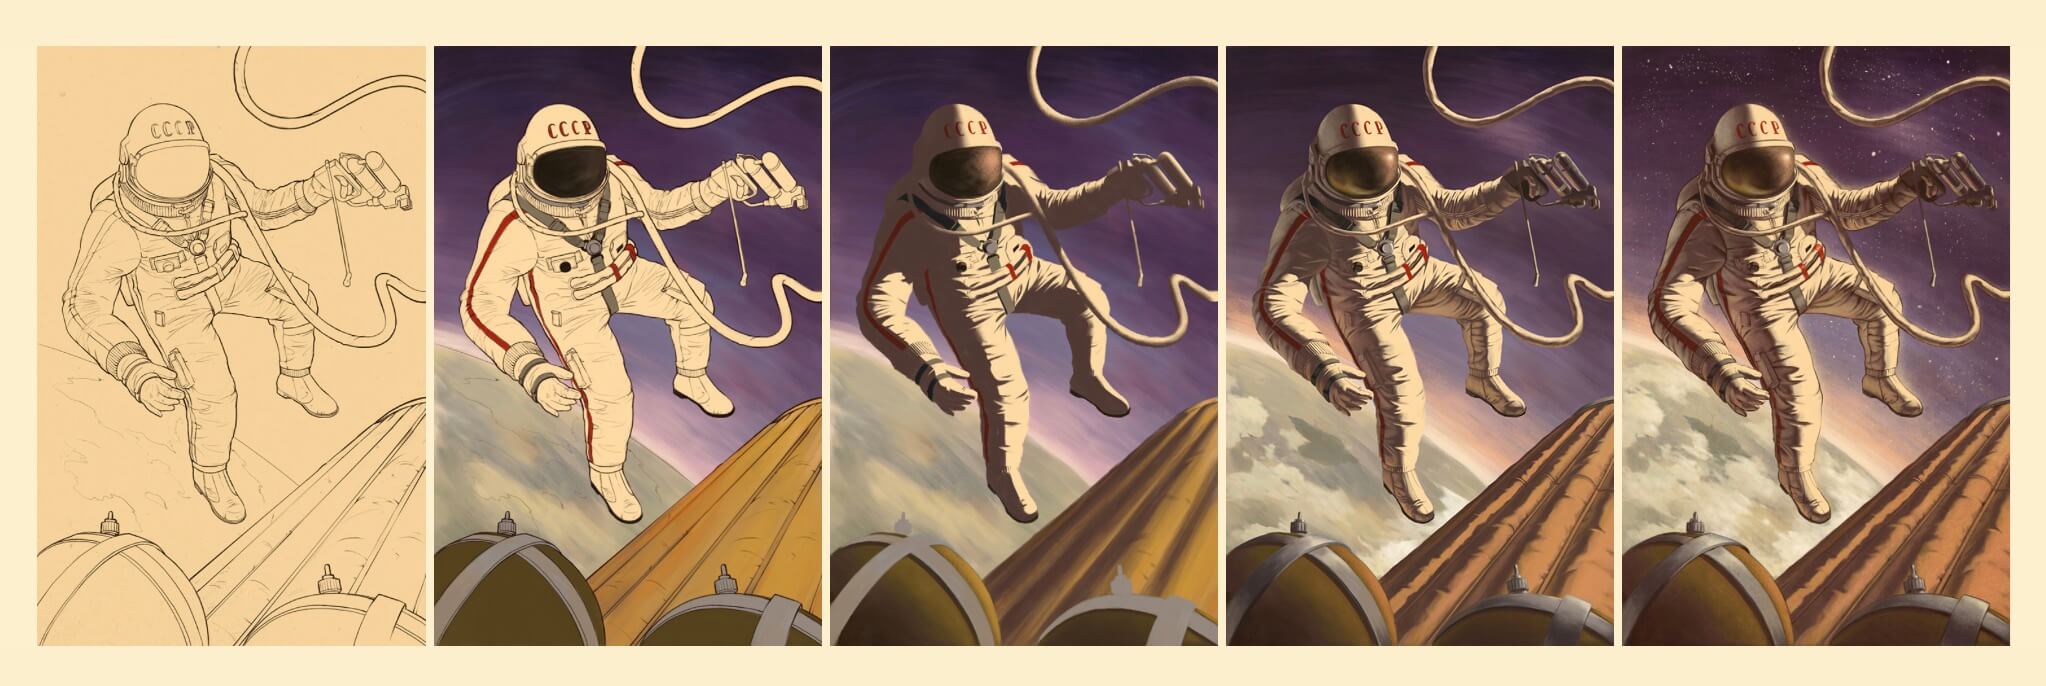 Процесс создания иллюстрации с изображением космонавта. 